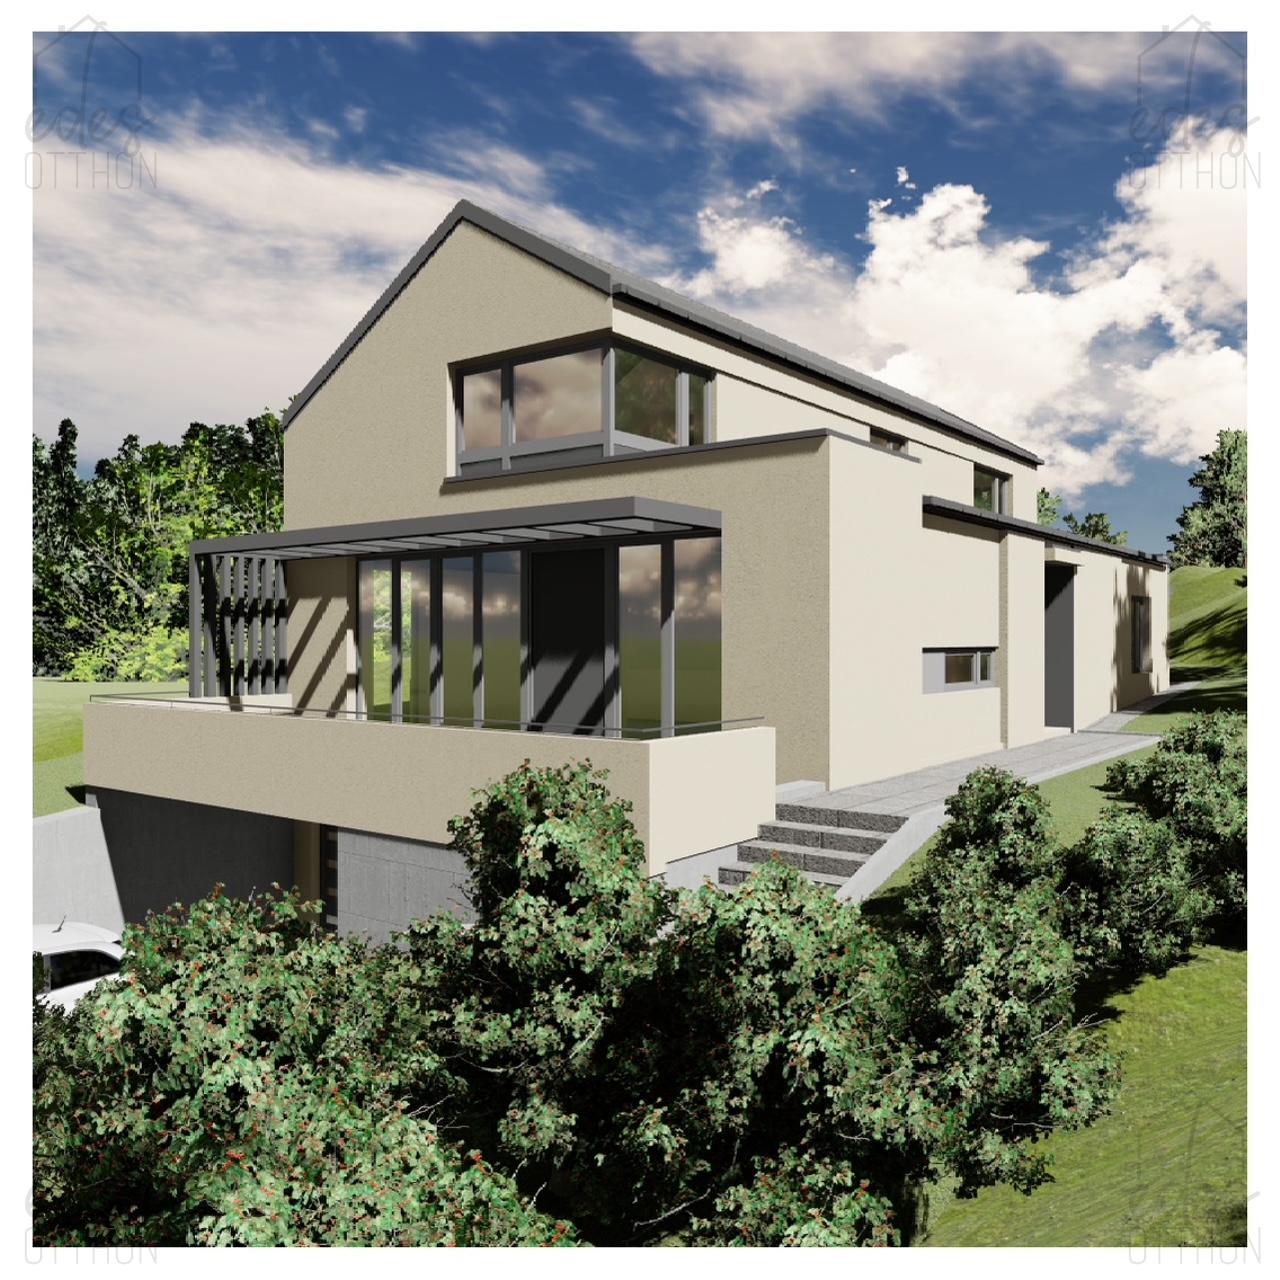 Eladó exkluzív, letisztult, luxus minőségben és korszerű technikával épülő alacsony energetikájú családi ház Nagykovácsiban - kép 12844